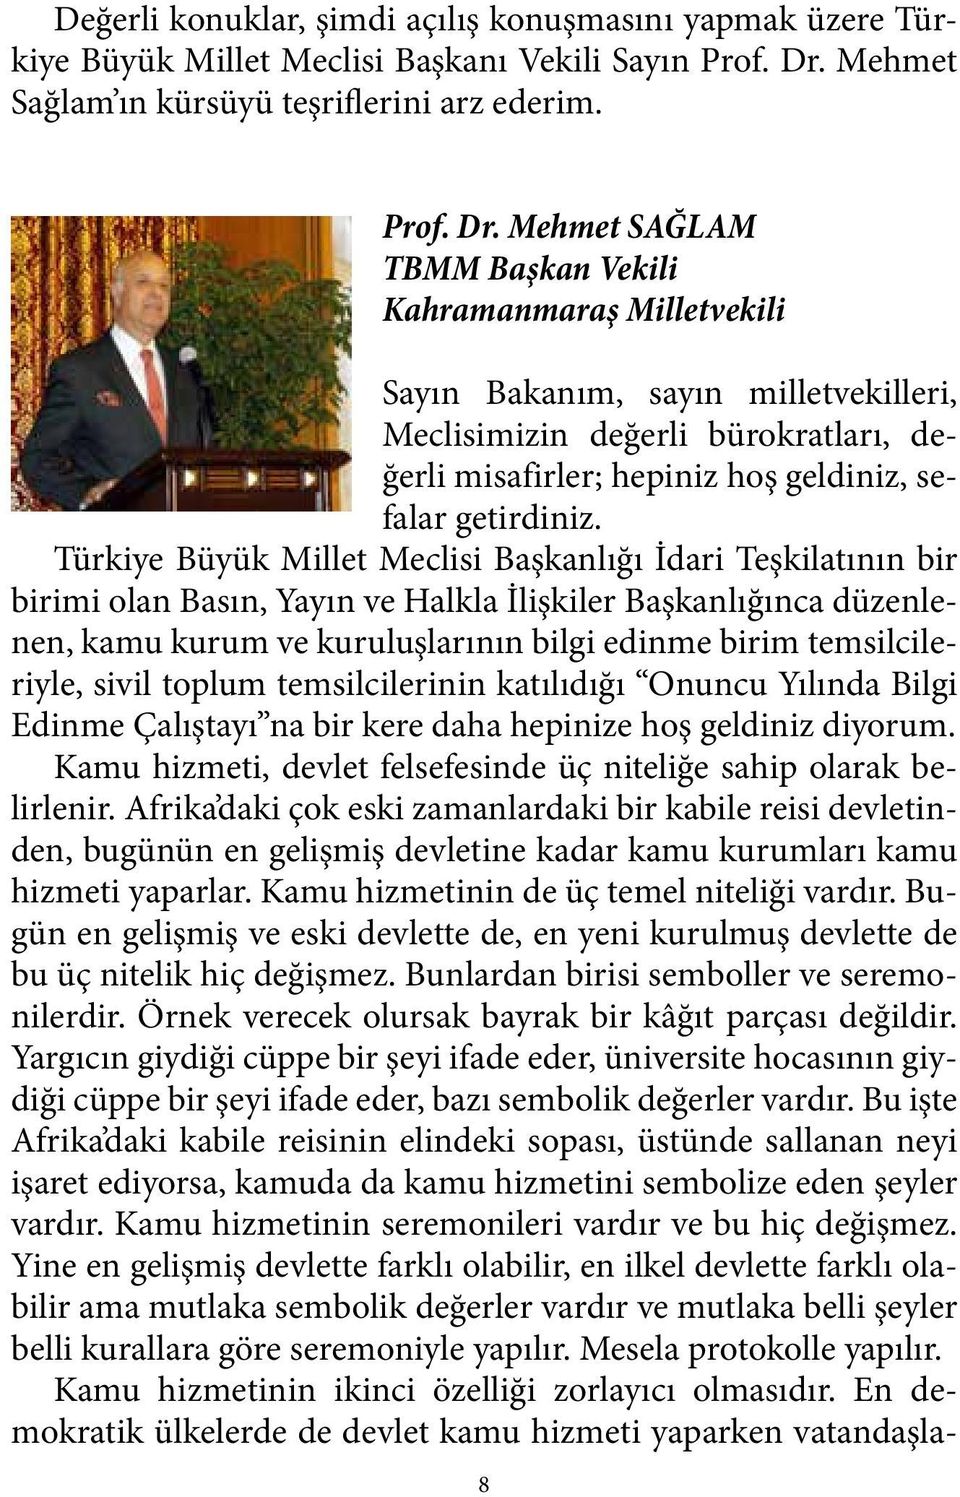 Mehmet SAĞLAM TBMM Başkan Vekili Kahramanmaraş Milletvekili Sayın Bakanım, sayın milletvekilleri, Meclisimizin değerli bürokratları, değerli misafirler; hepiniz hoş geldiniz, sefalar getirdiniz.